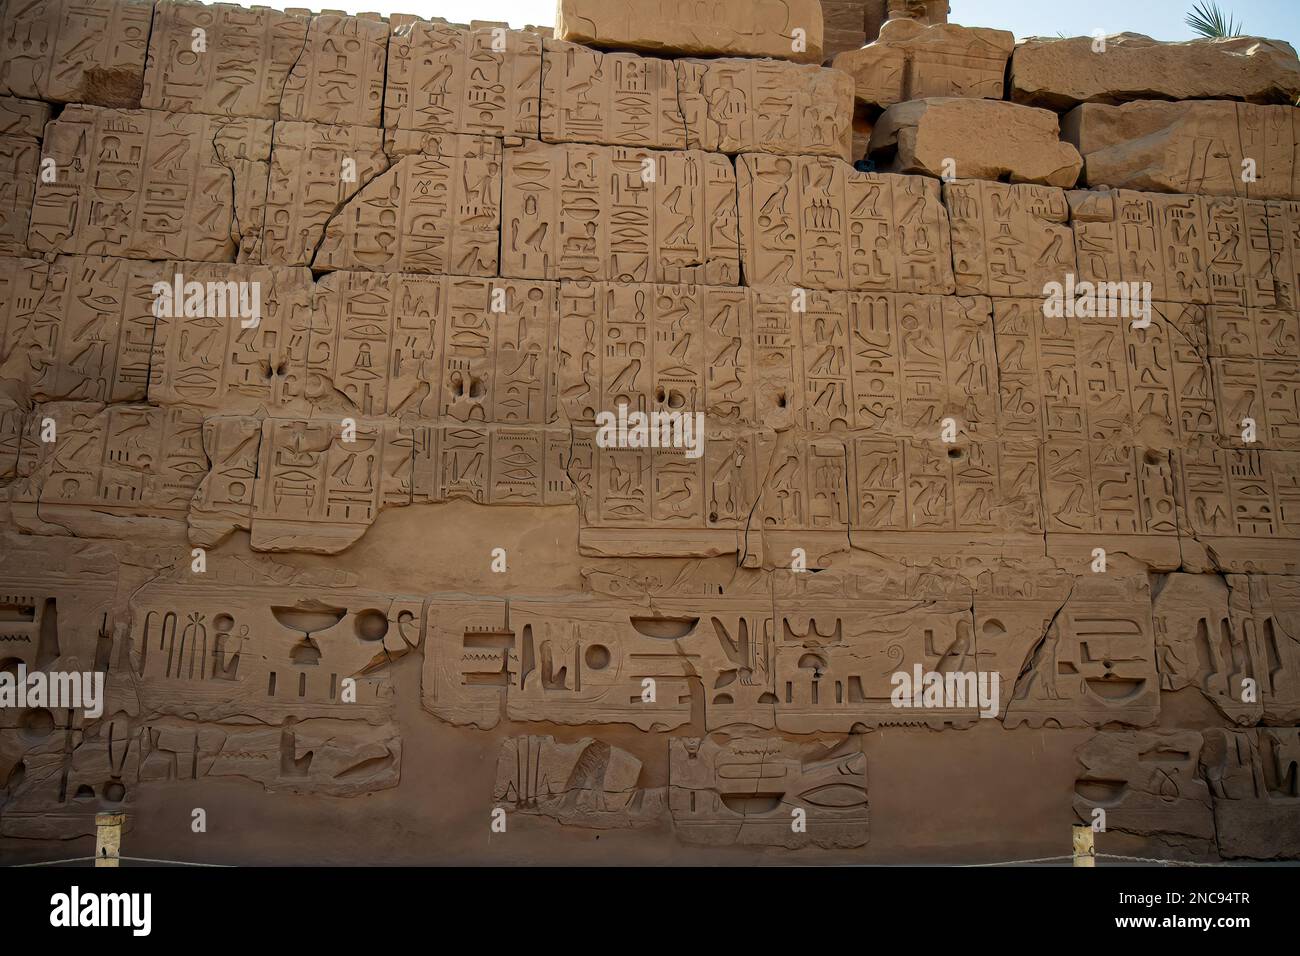 Luxor, Egitto. Il complesso del Tempio di Karnak, comunemente noto come Karnak, comprende un vasto mix di templi decadenti, 26th marzo 2013. Foto Stock